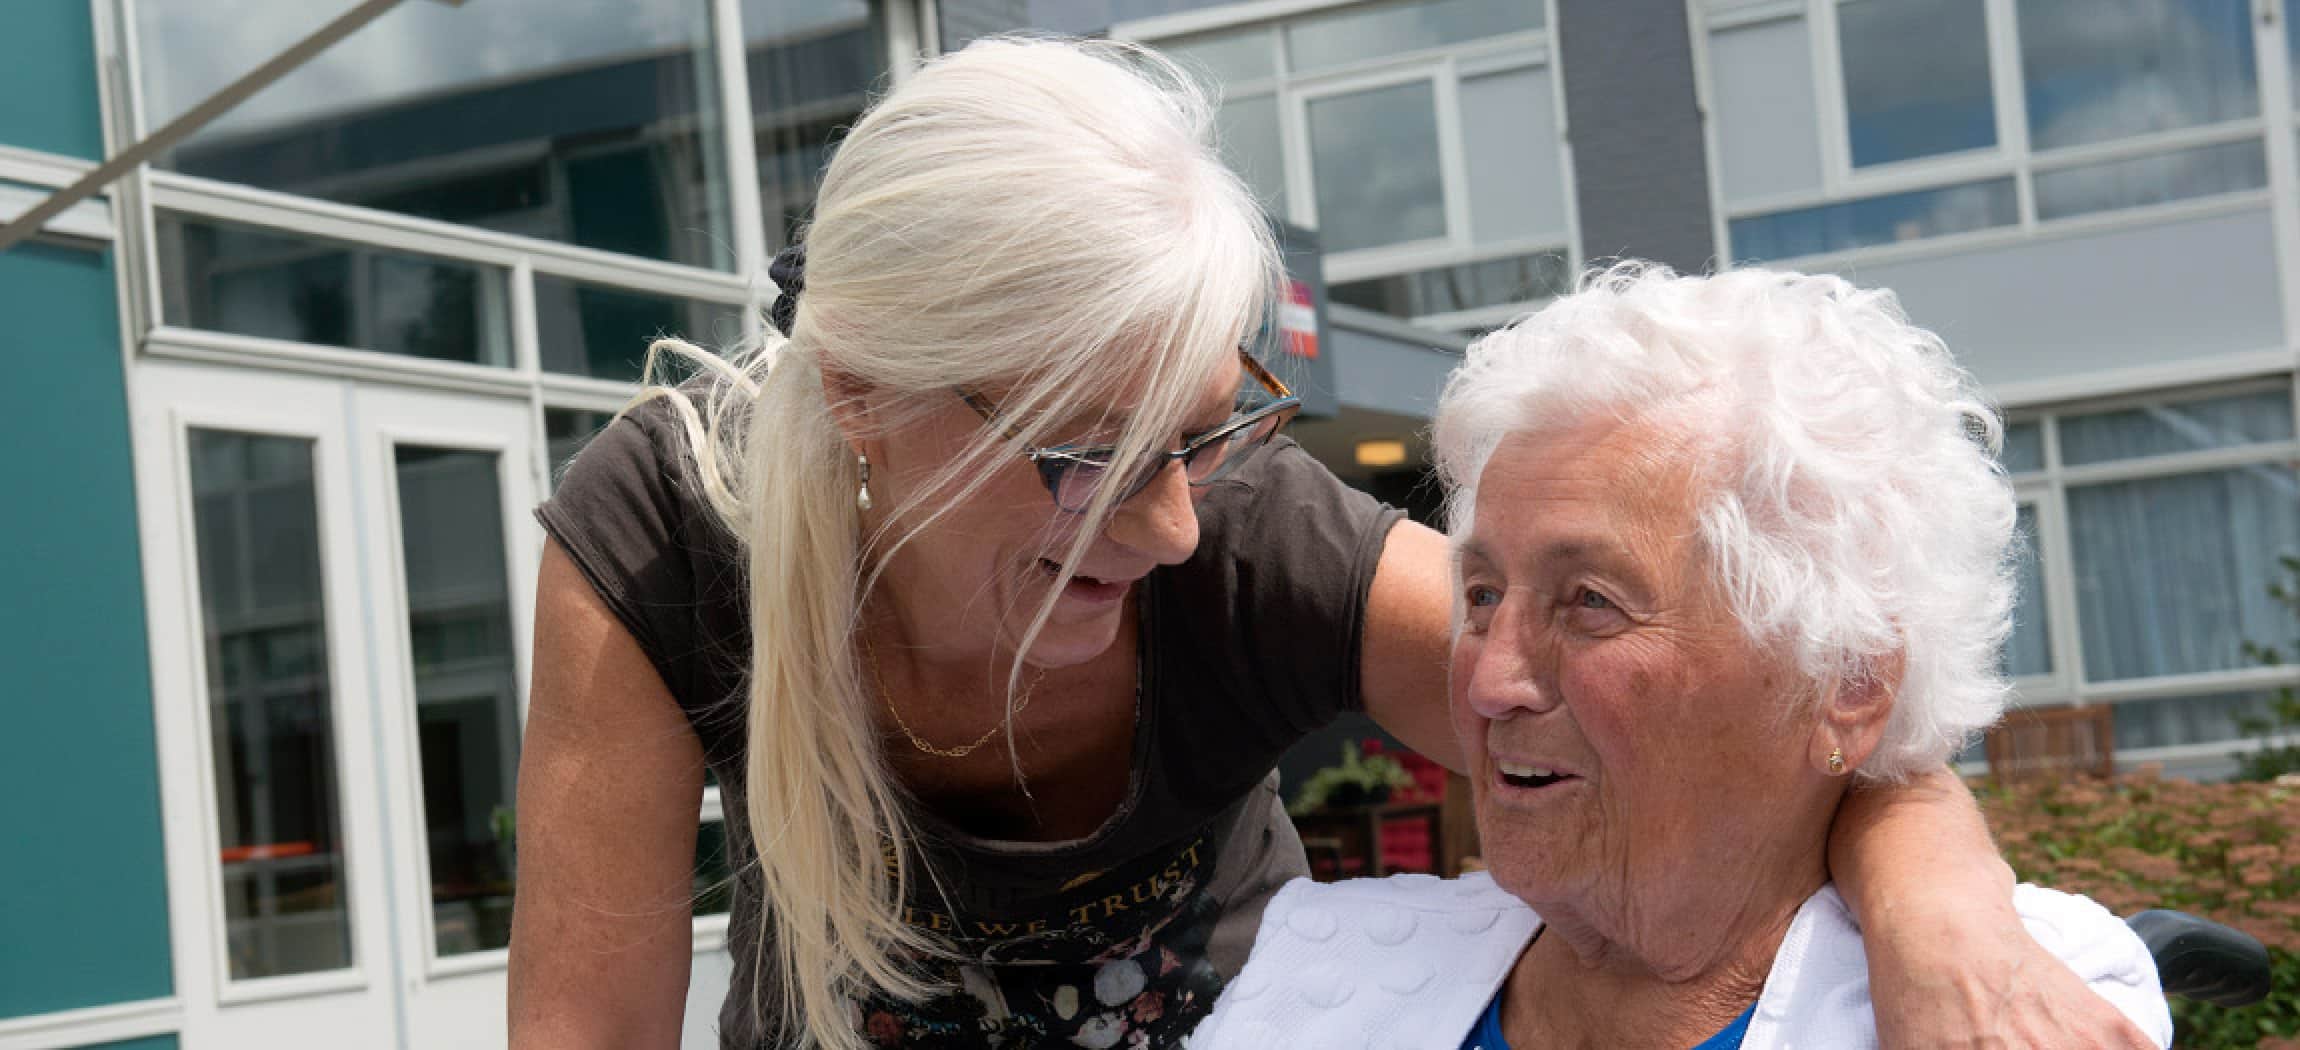 Bejaarde vrouw zit buiten en wordt omarmd door verpleegkundige met lang grijs haar